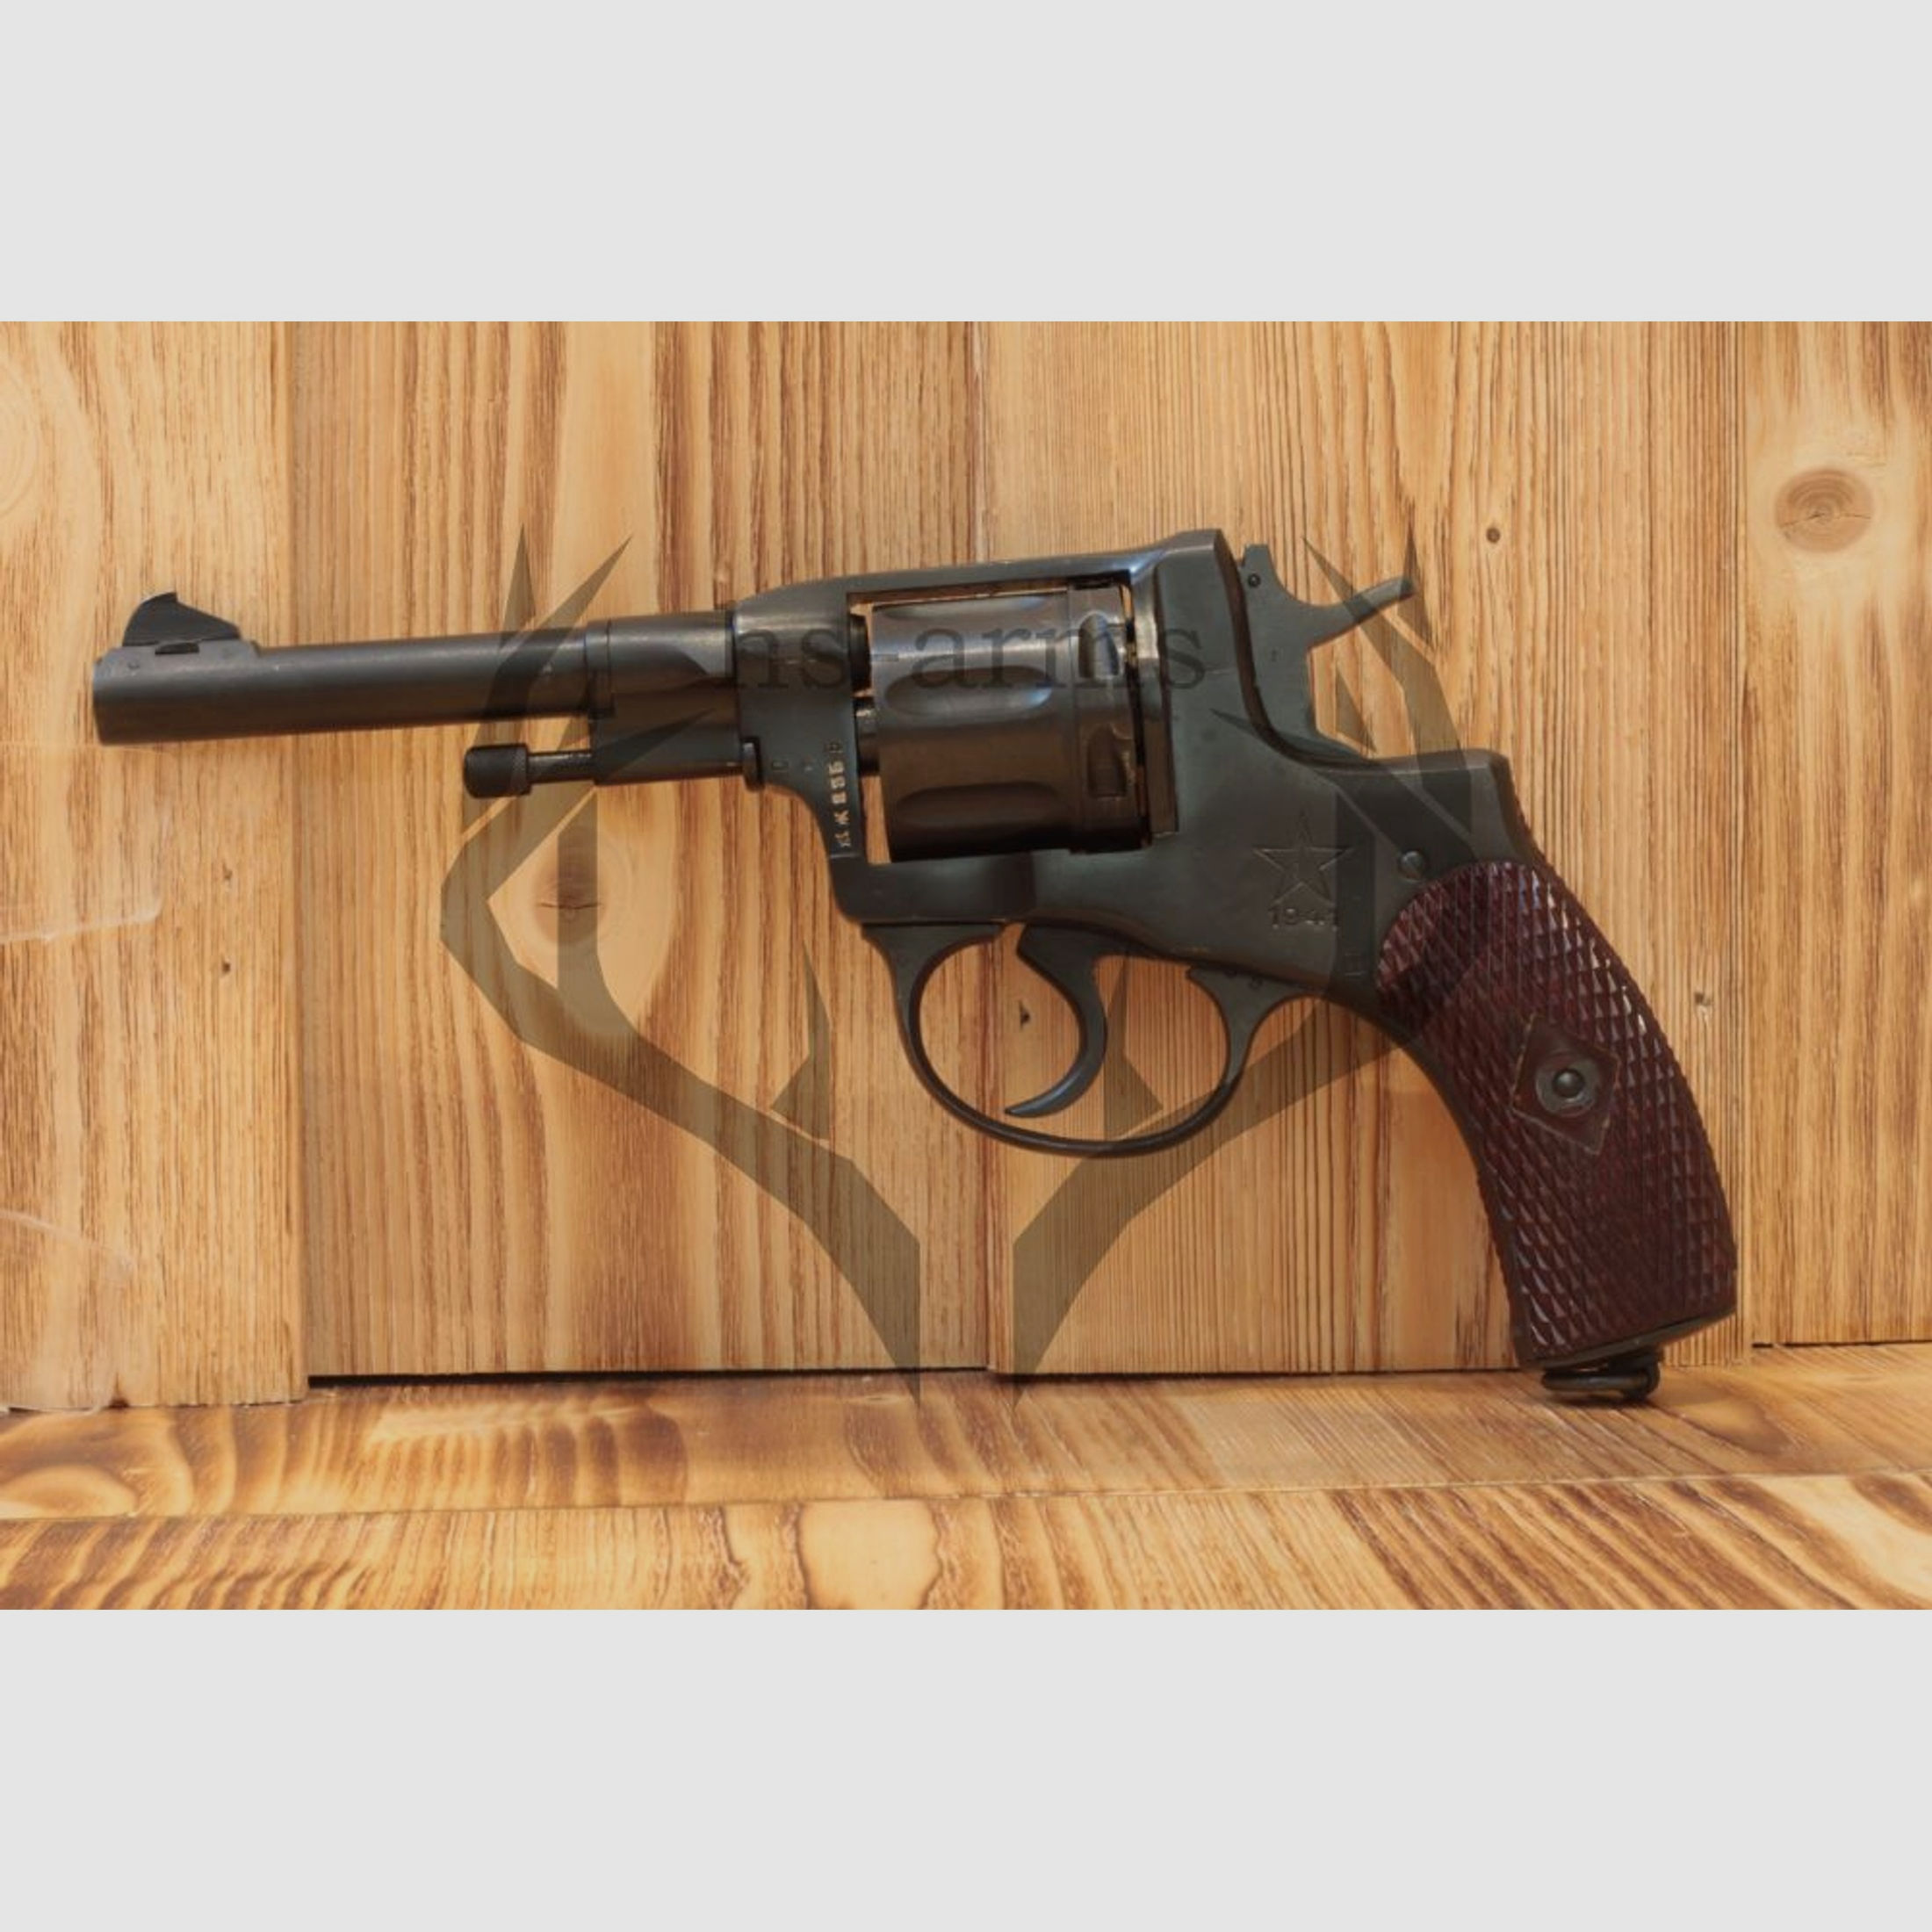 Nagant	 Nagant M1895 Revolver - 7,62 × 38 mm R